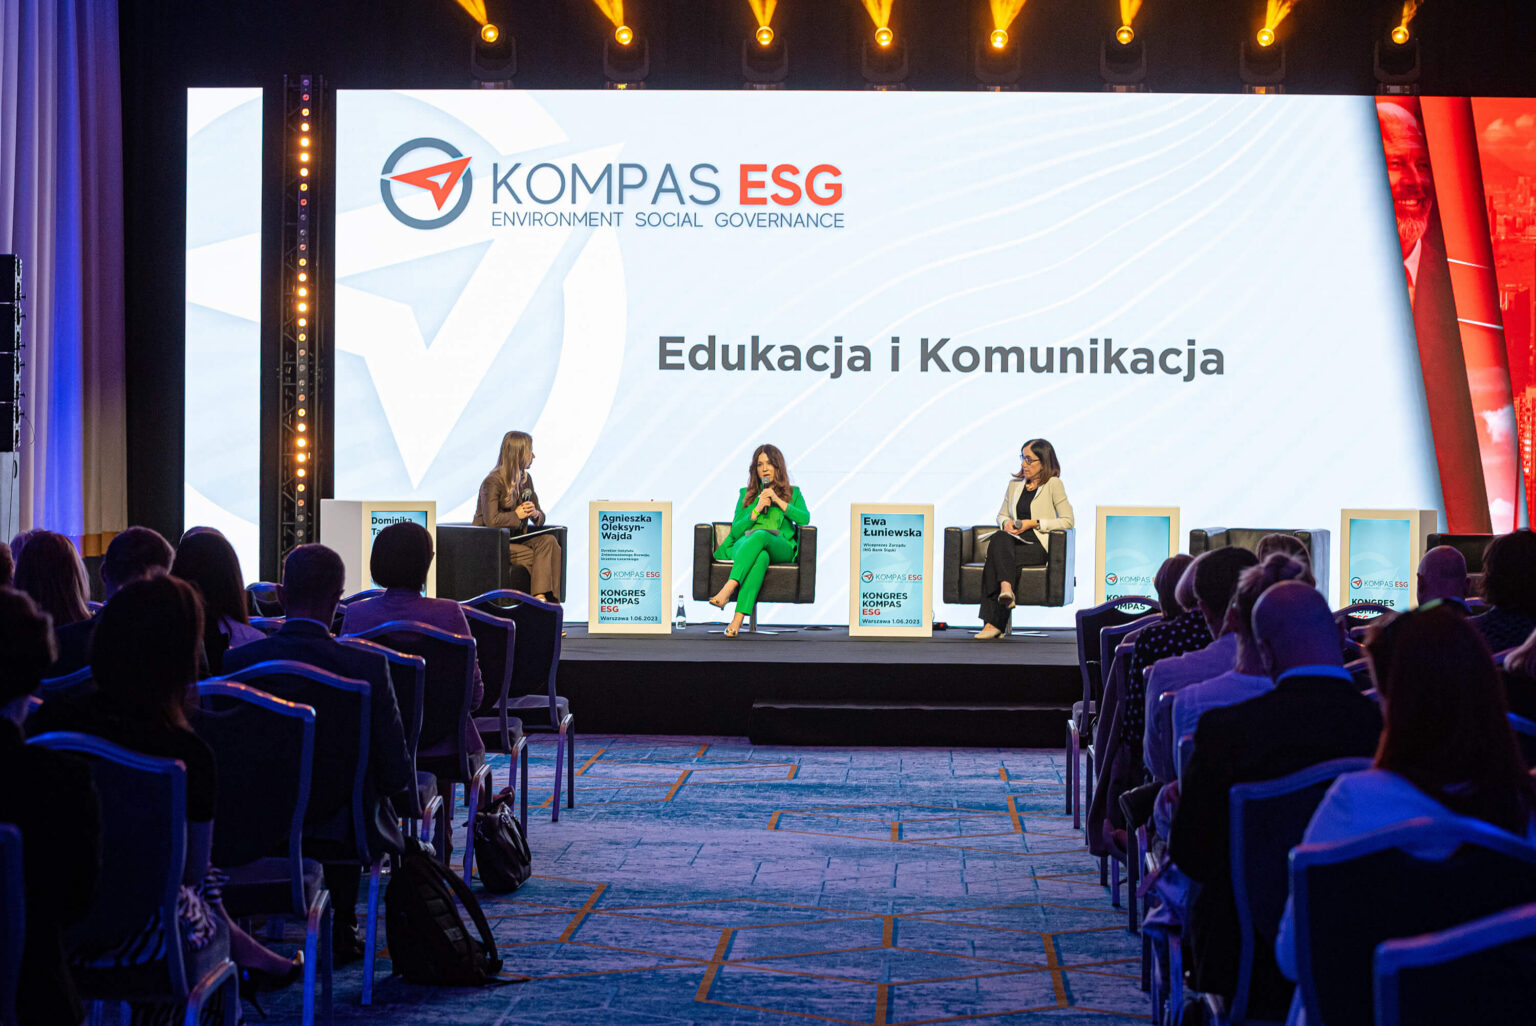 Ewa Łuniewska i Agnieszka Oleksyn – Wajda w trakcie Kongresu Kompas ESG.